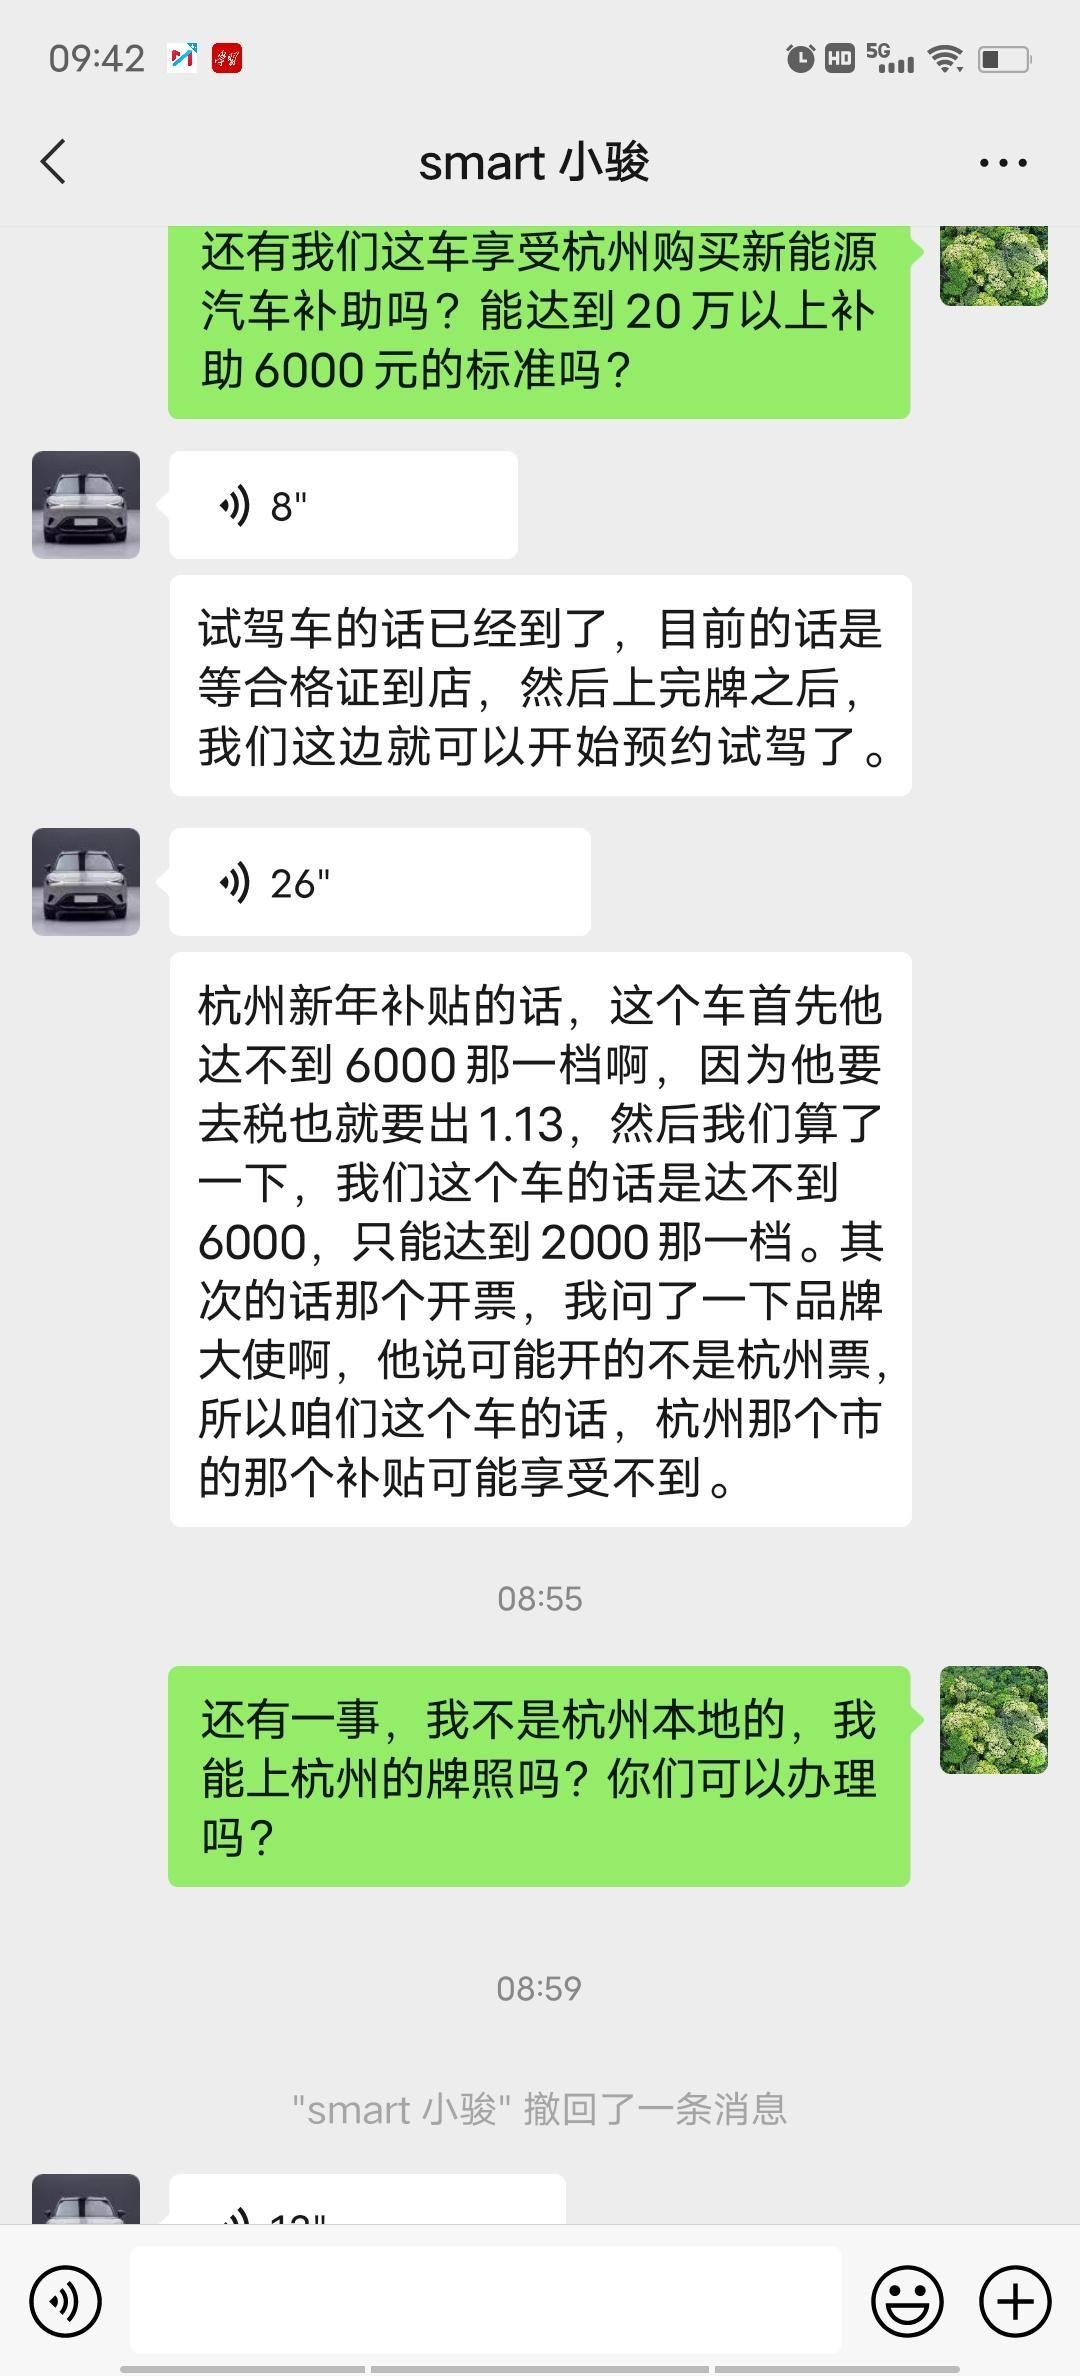 smart精灵#1 问过销售人员，说不能享受杭州地区的补助，又少了6000元。